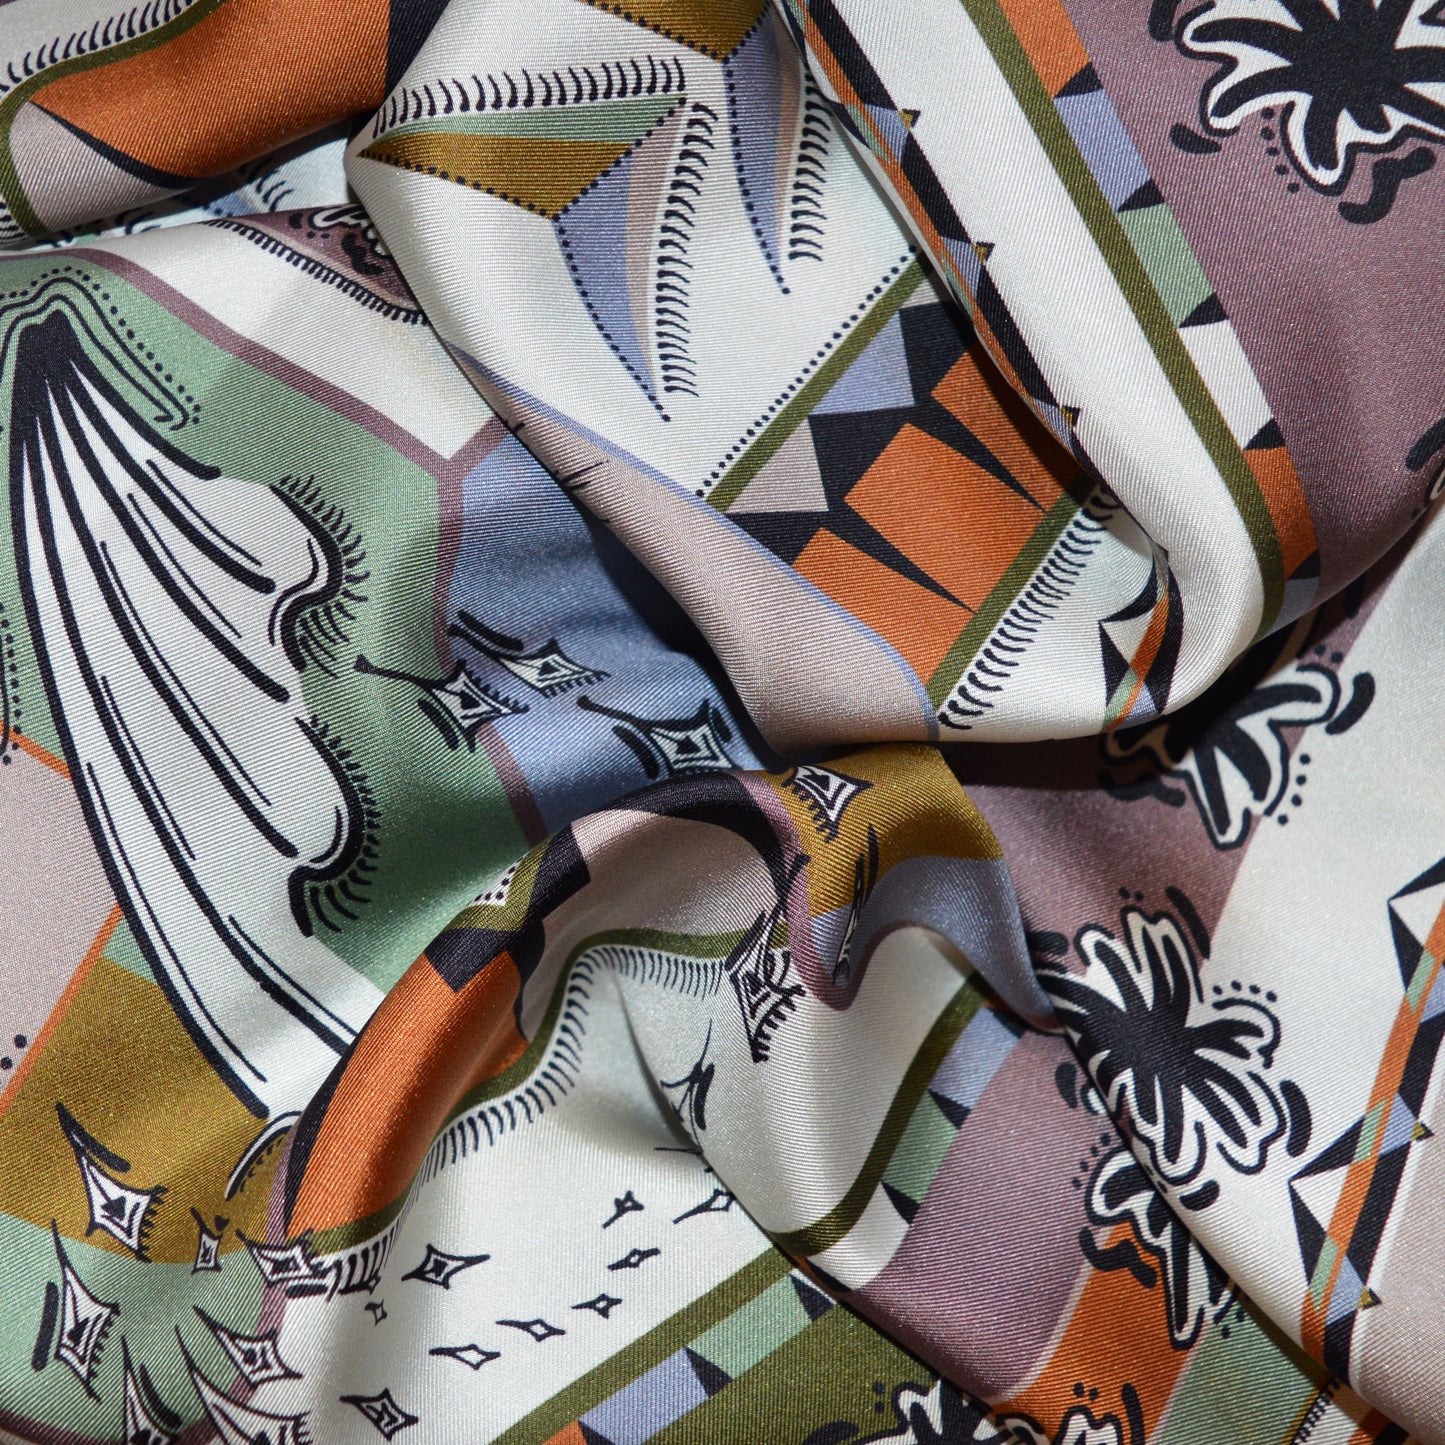 zoom trama della seta con pattern mossi dalle tonalità naturali